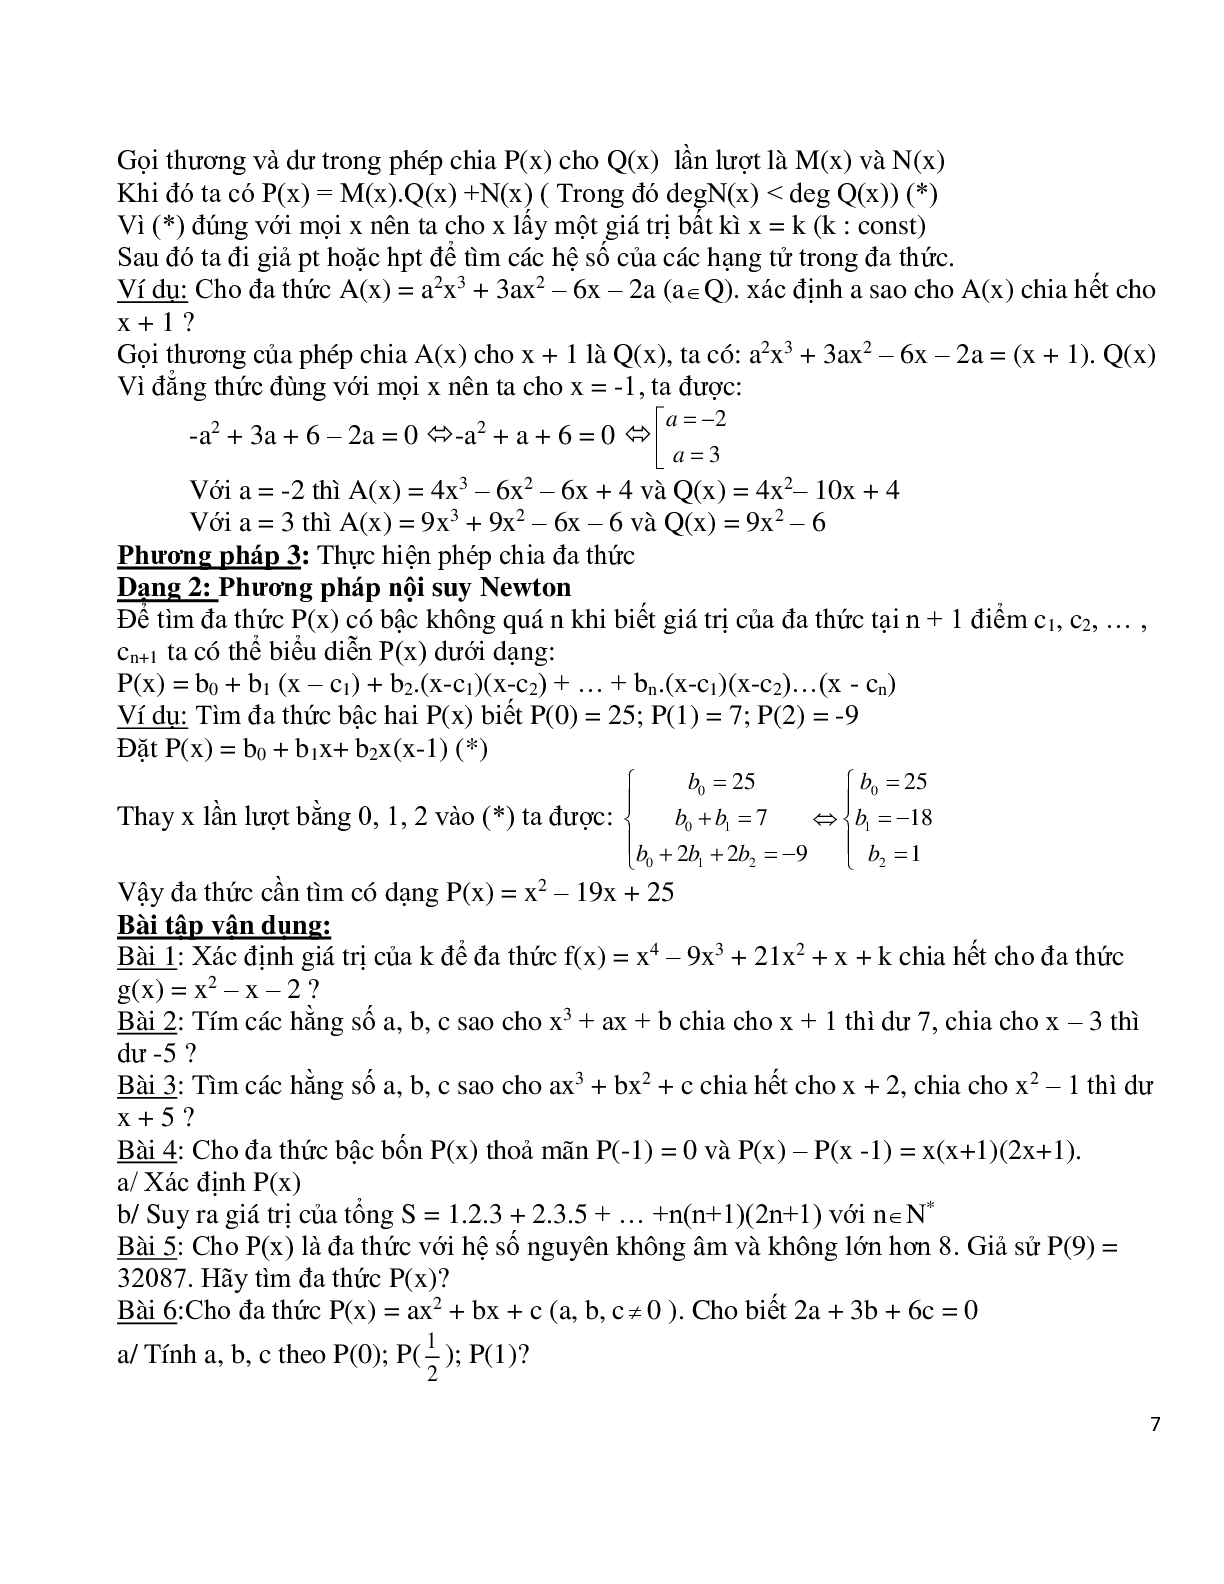 Chuyên đề bồi dưỡng học sinh giỏi toán đa thức (trang 7)